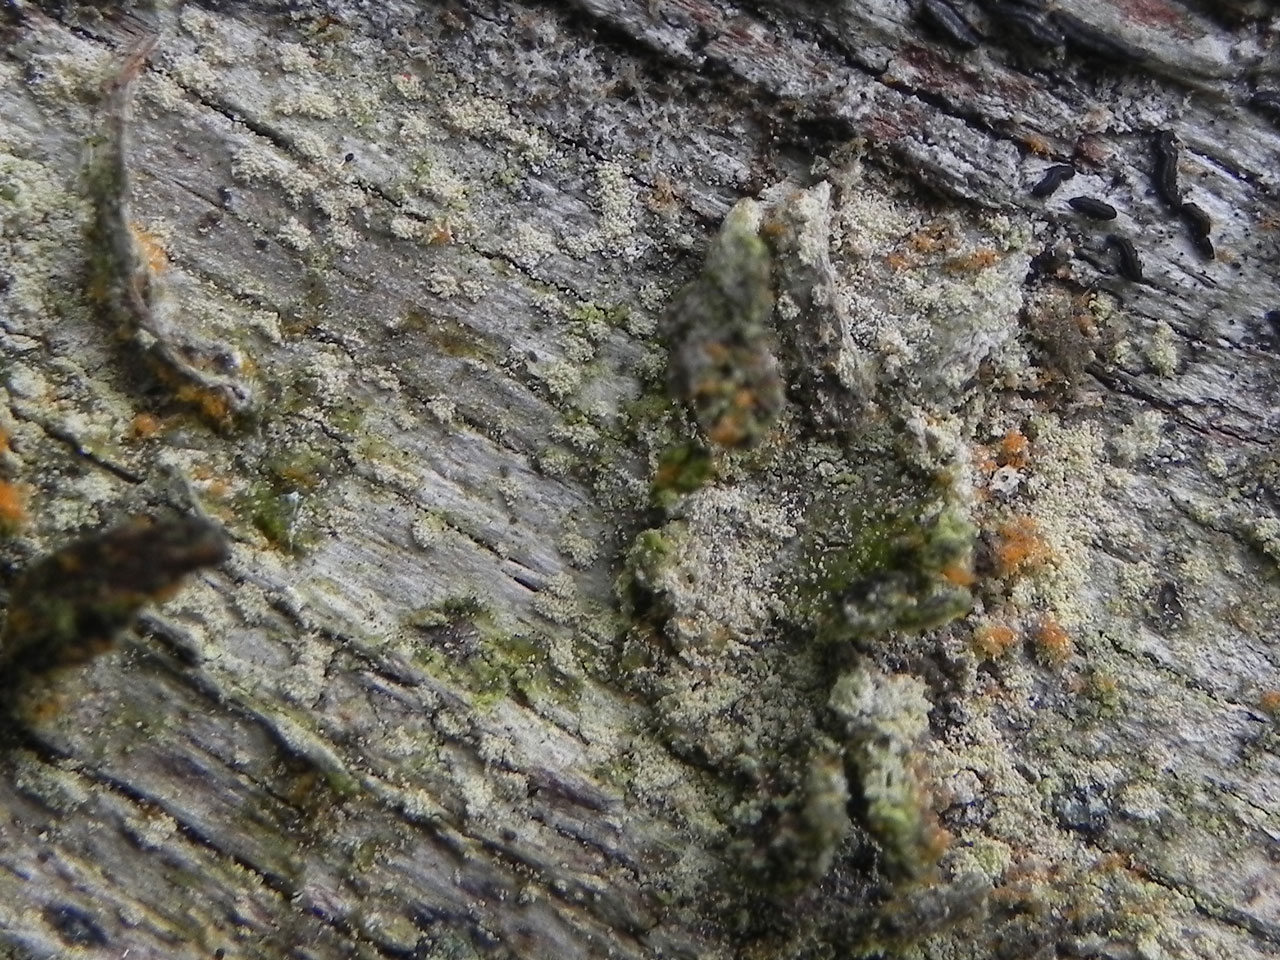 Schizotrema quercicola, Glendalough, Co Wicklow